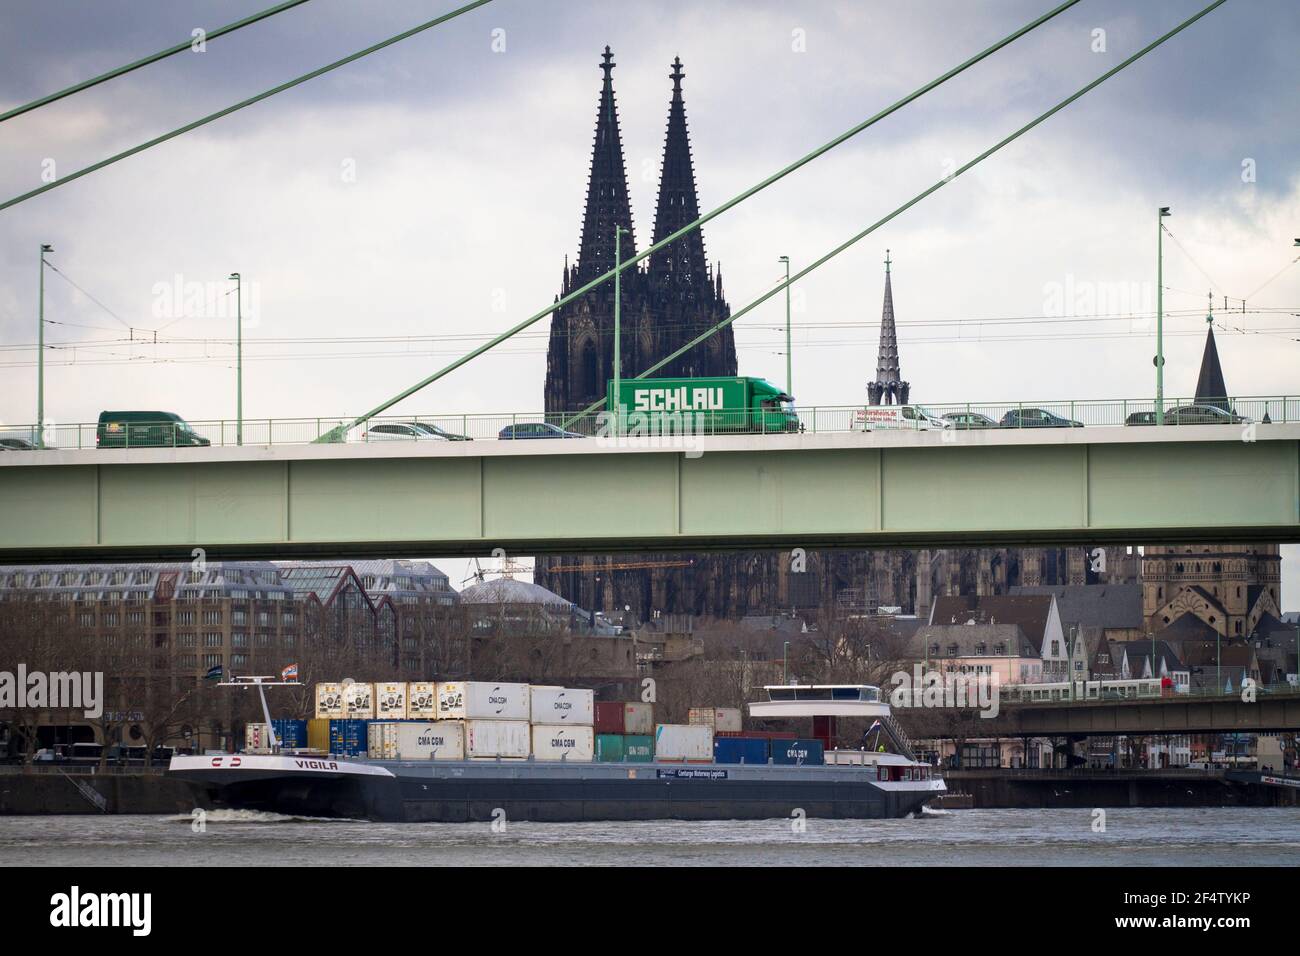 Containerschiff auf dem Rhein, Severins-Brücke, Dom, Köln, Deutschland. Conatinerschiff auf dem Rhein, Severinsbrücke, Dom, Köln, Deut Stockfoto